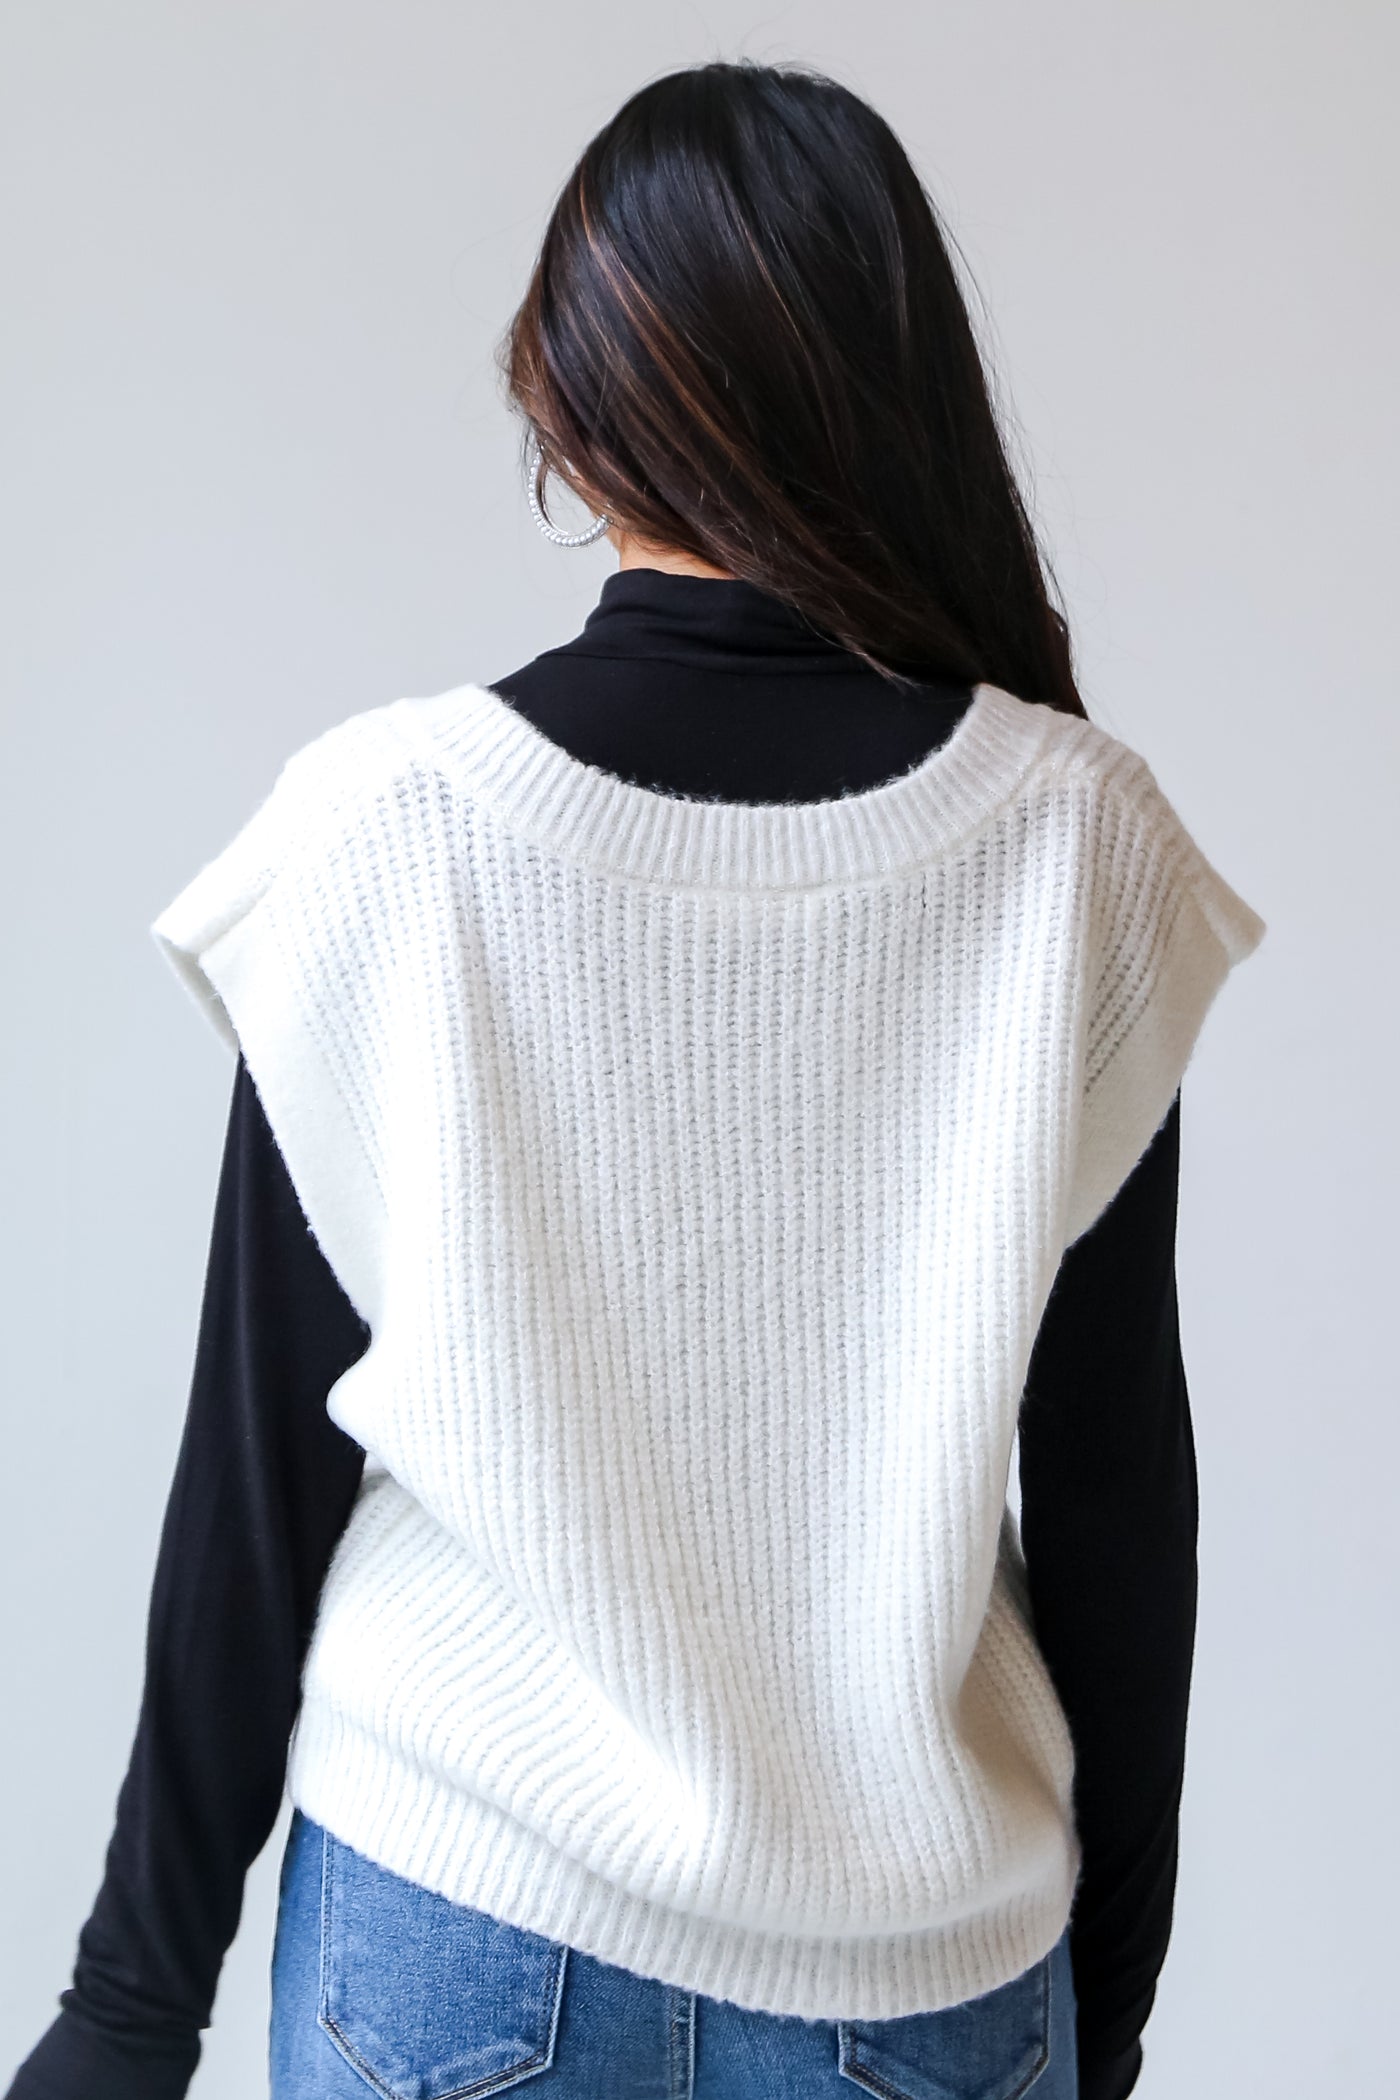 v-neck White Sweater Vest